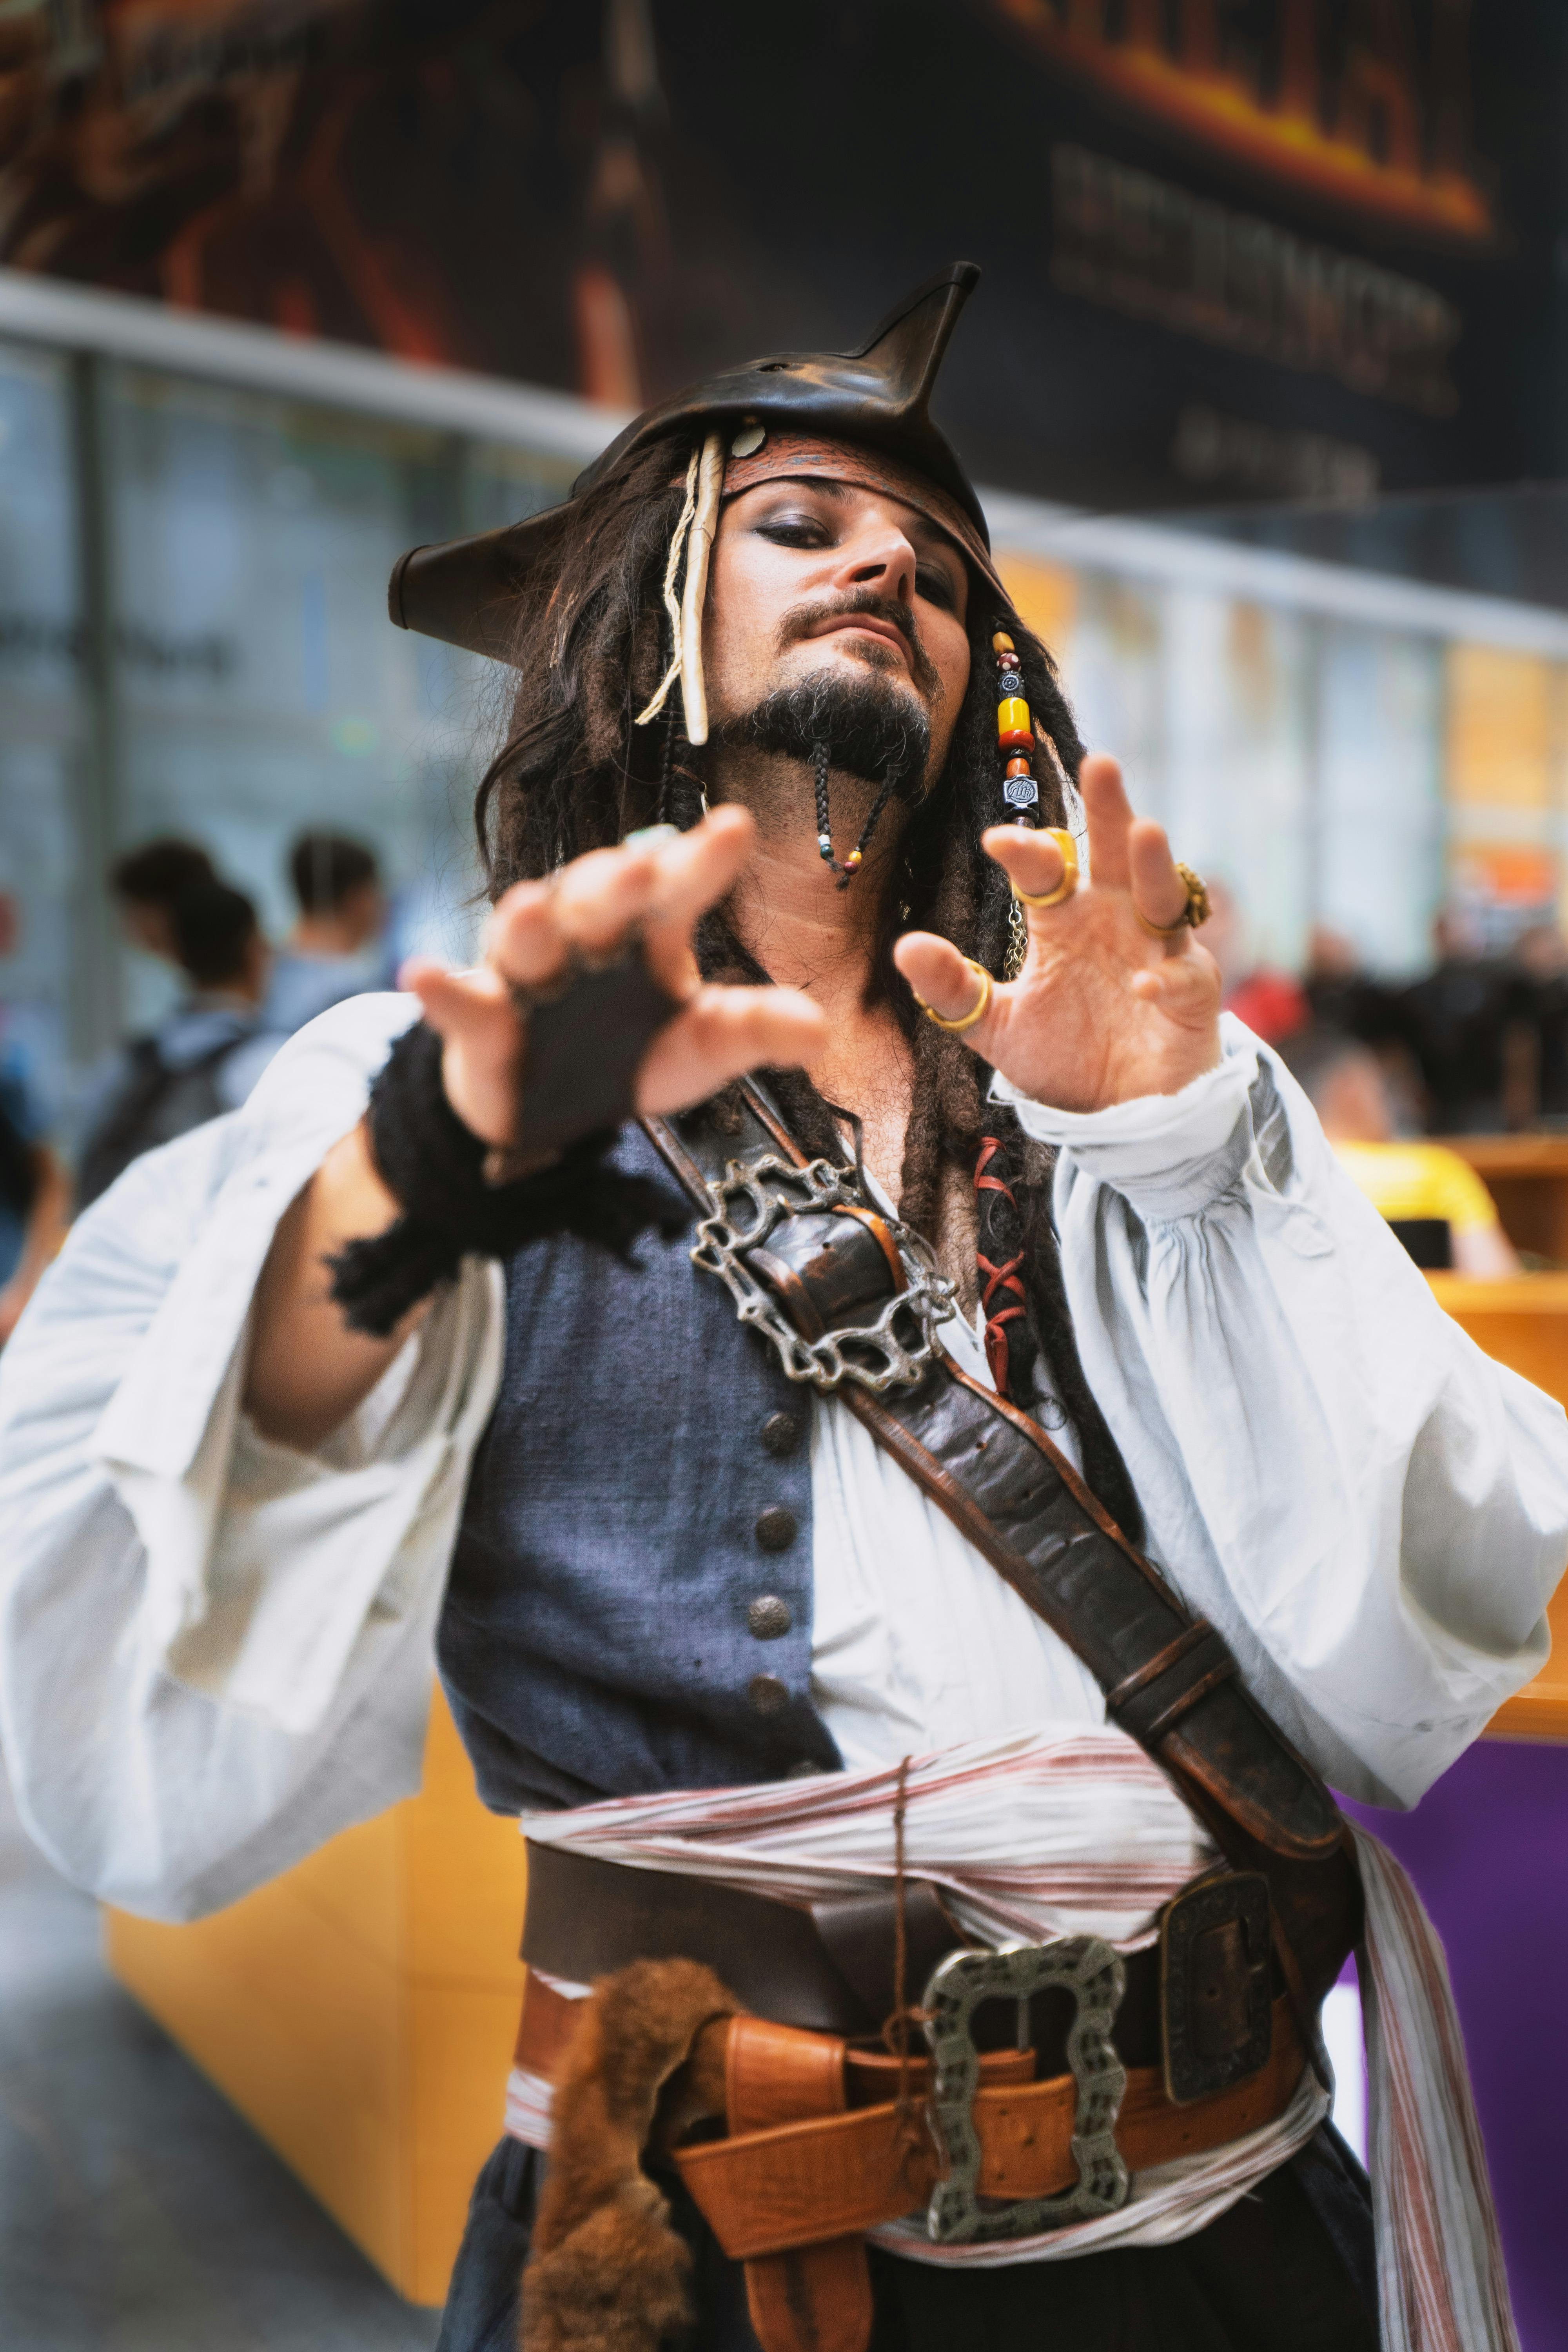 Gratis lagerfoto af cosplay, hænder op, kaptajn jack sparrow, kostume, lodret skud, mand, person, pirat, piraterne fra caribien, positur